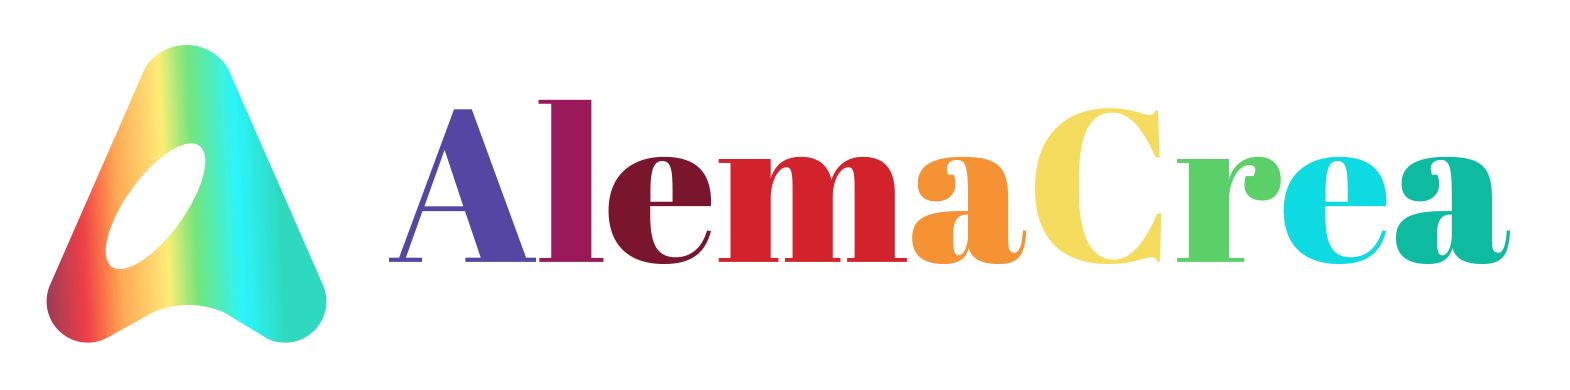 Alemacrea logo